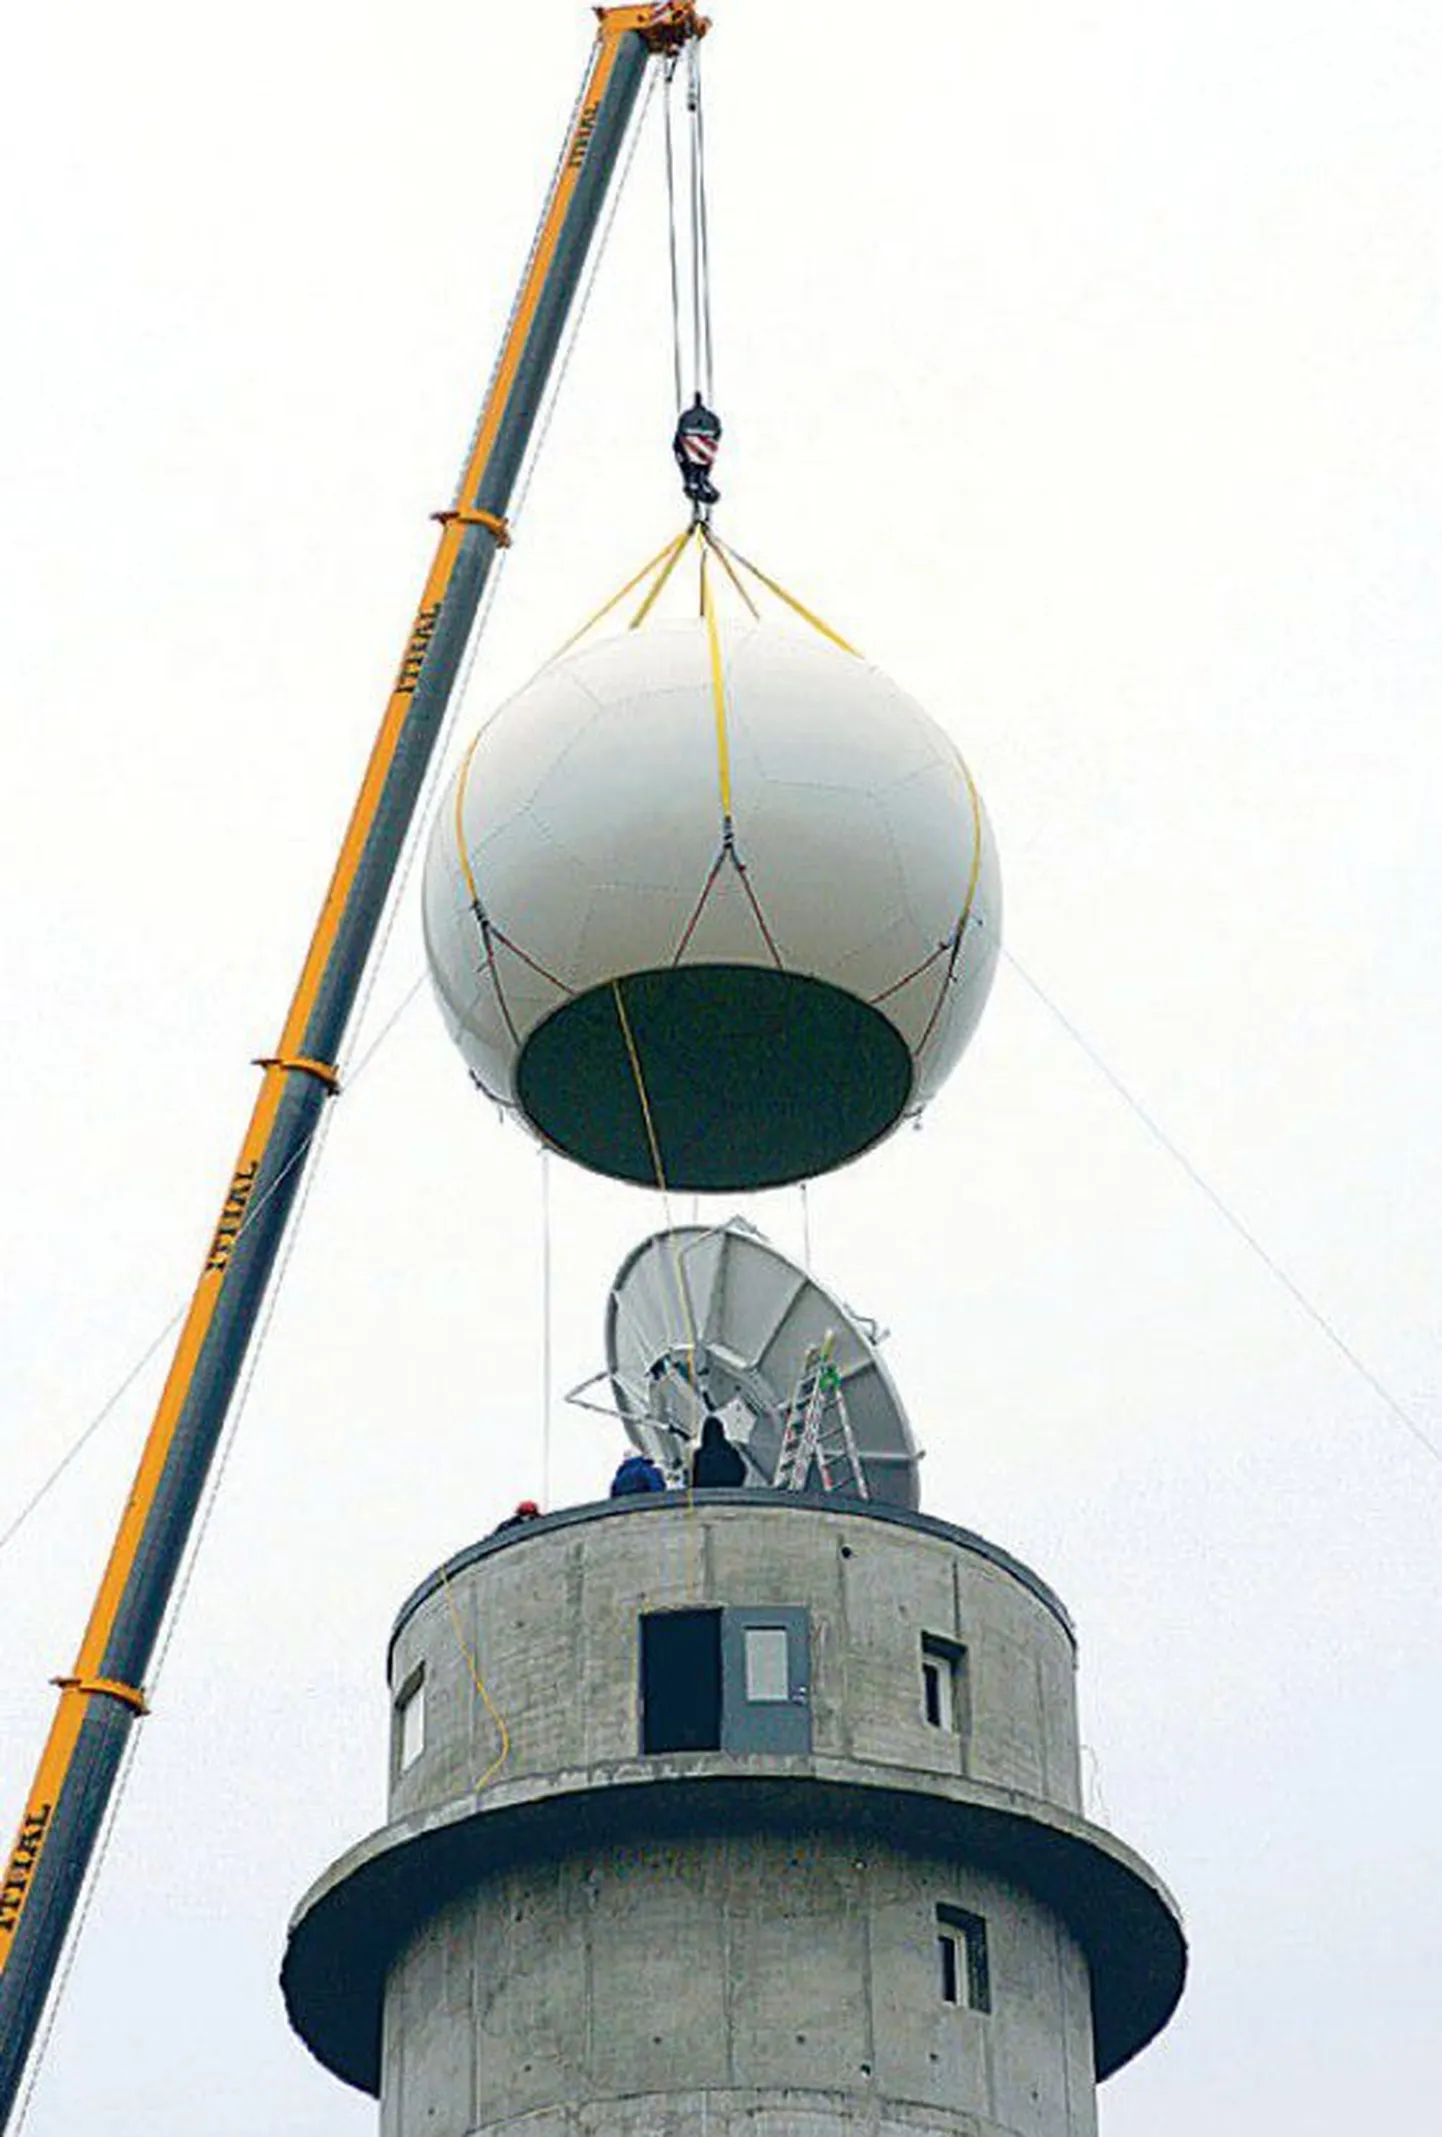 Soomest ostetud moodsa ilmaradari
paigaldamine Sürgaveres asuva betoontorni
tippu 2008. aastal.